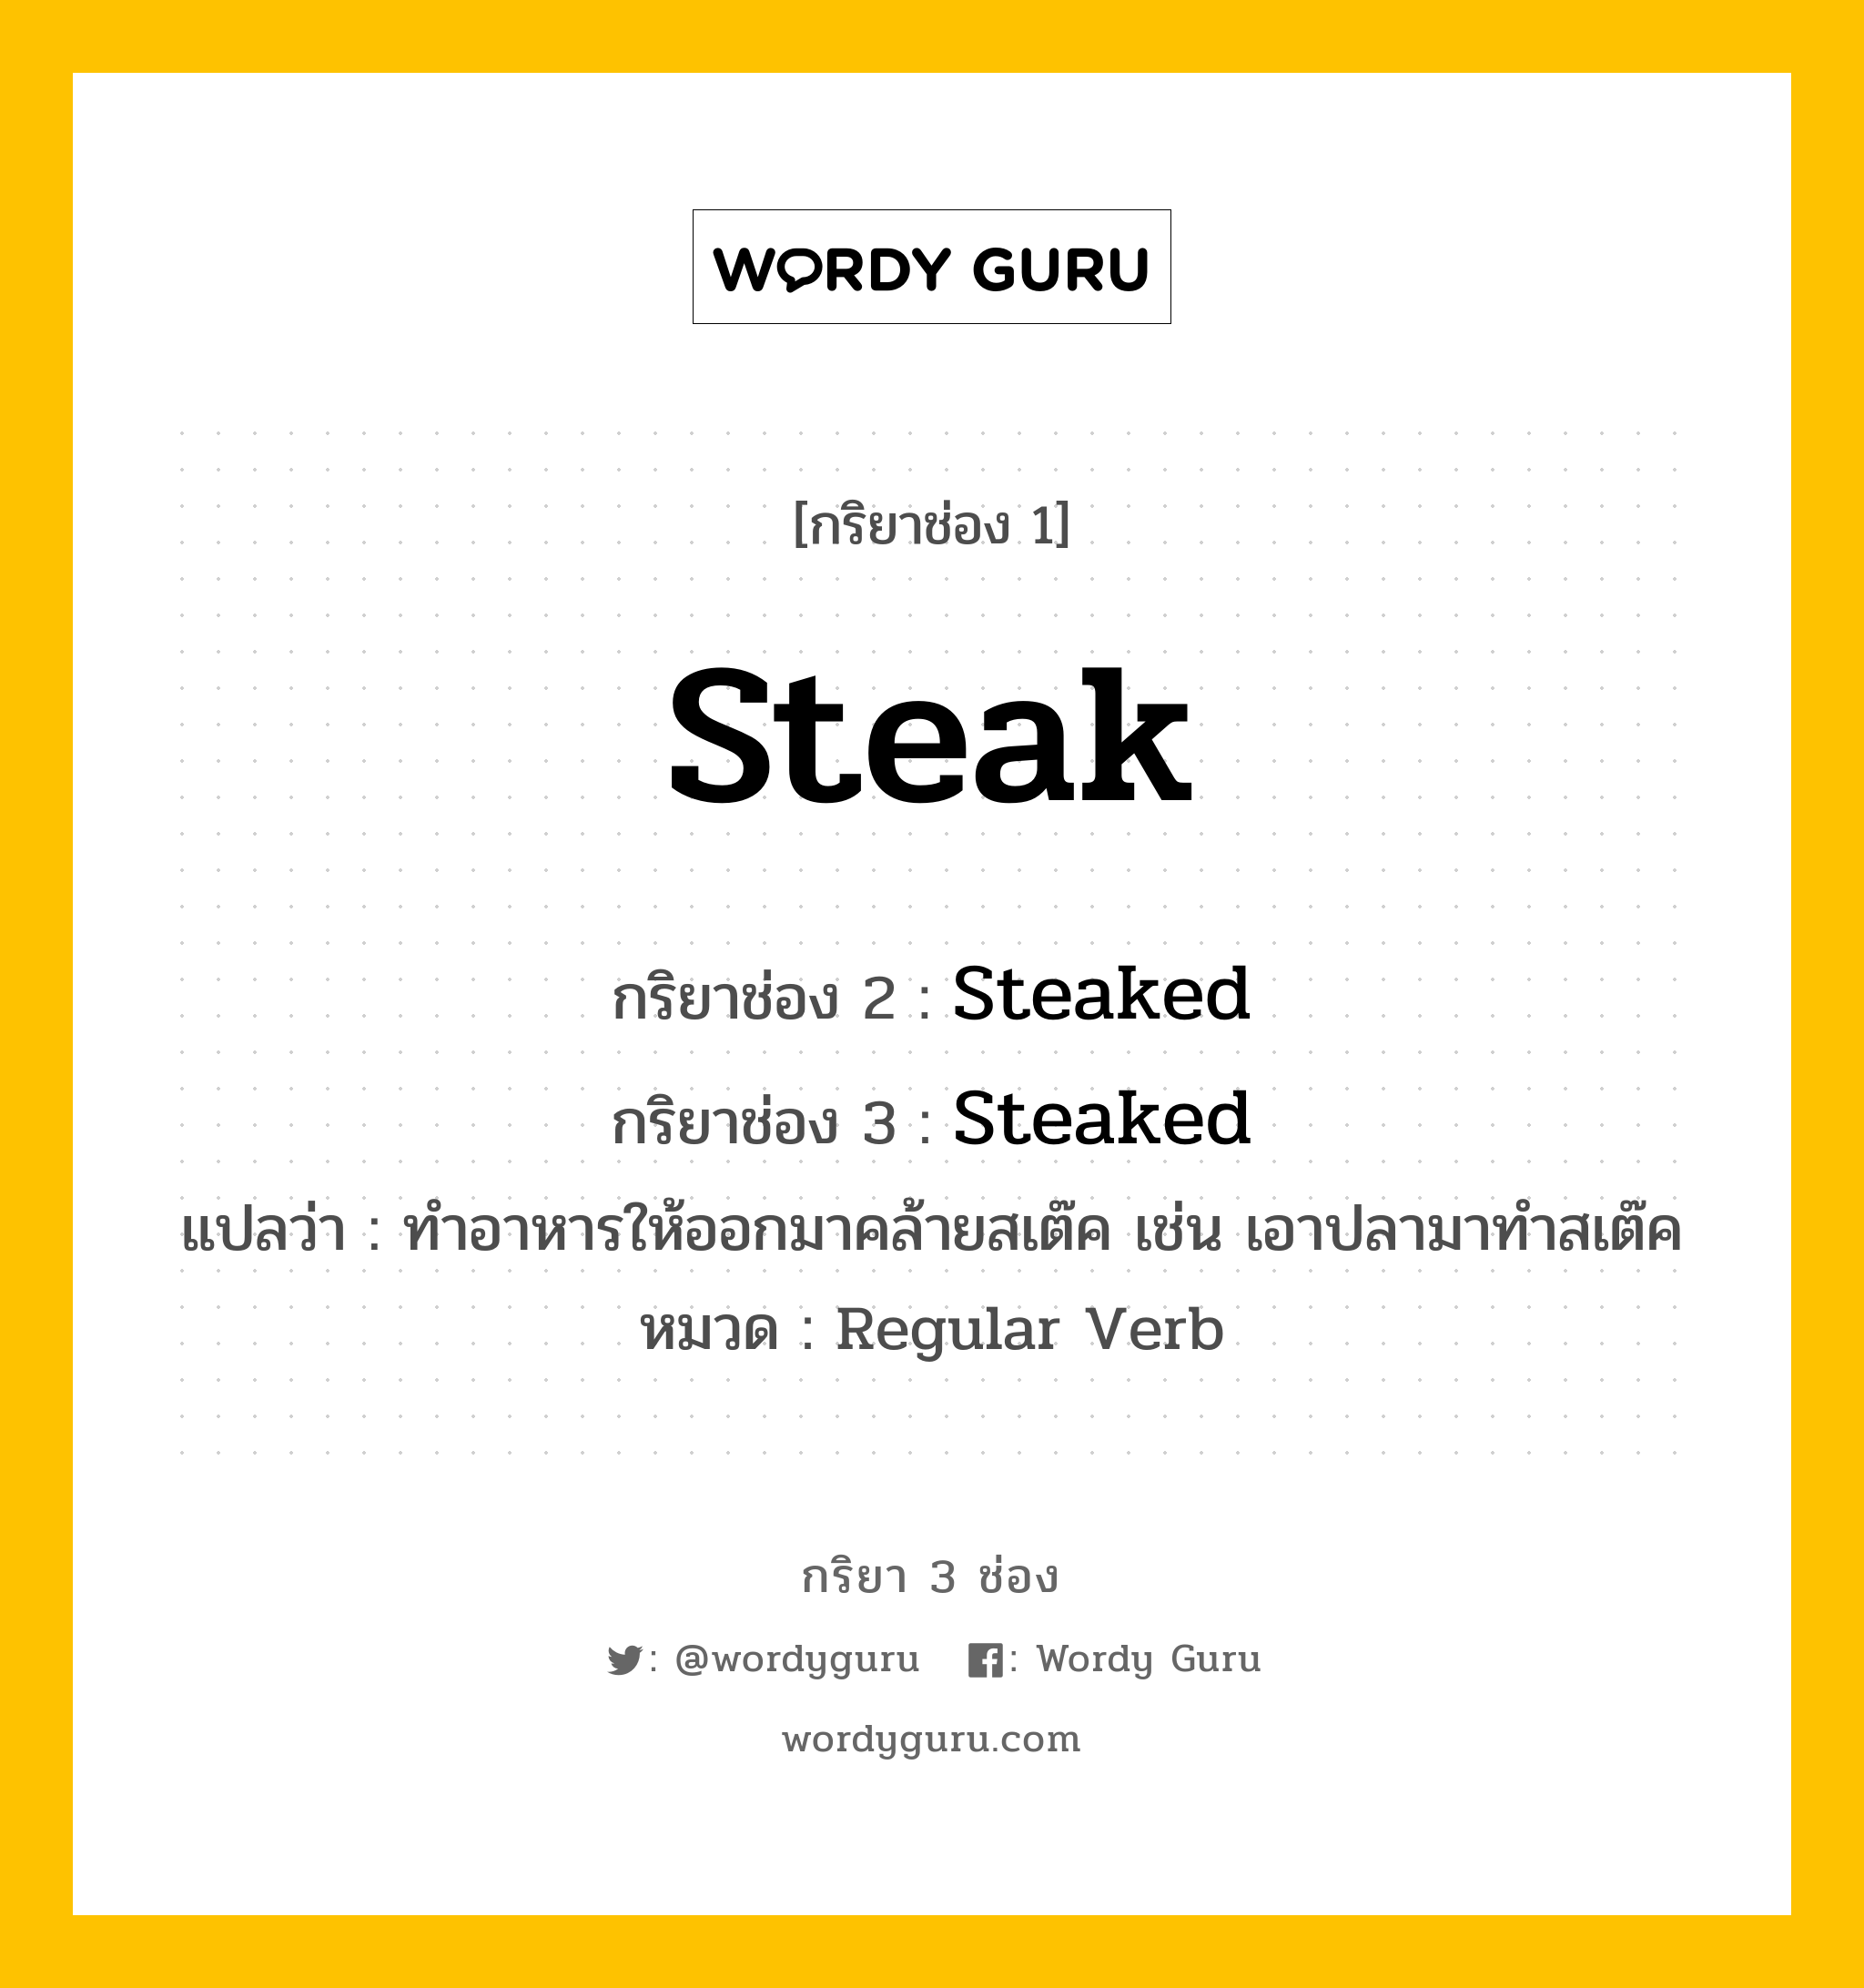 กริยา 3 ช่อง ของ Steak คืออะไร? มาดูคำอ่าน คำแปลกันเลย, กริยาช่อง 1 Steak กริยาช่อง 2 Steaked กริยาช่อง 3 Steaked แปลว่า ทำอาหารให้ออกมาคล้ายสเต๊ค เช่น เอาปลามาทำสเต๊ค หมวด Regular Verb หมวด Regular Verb